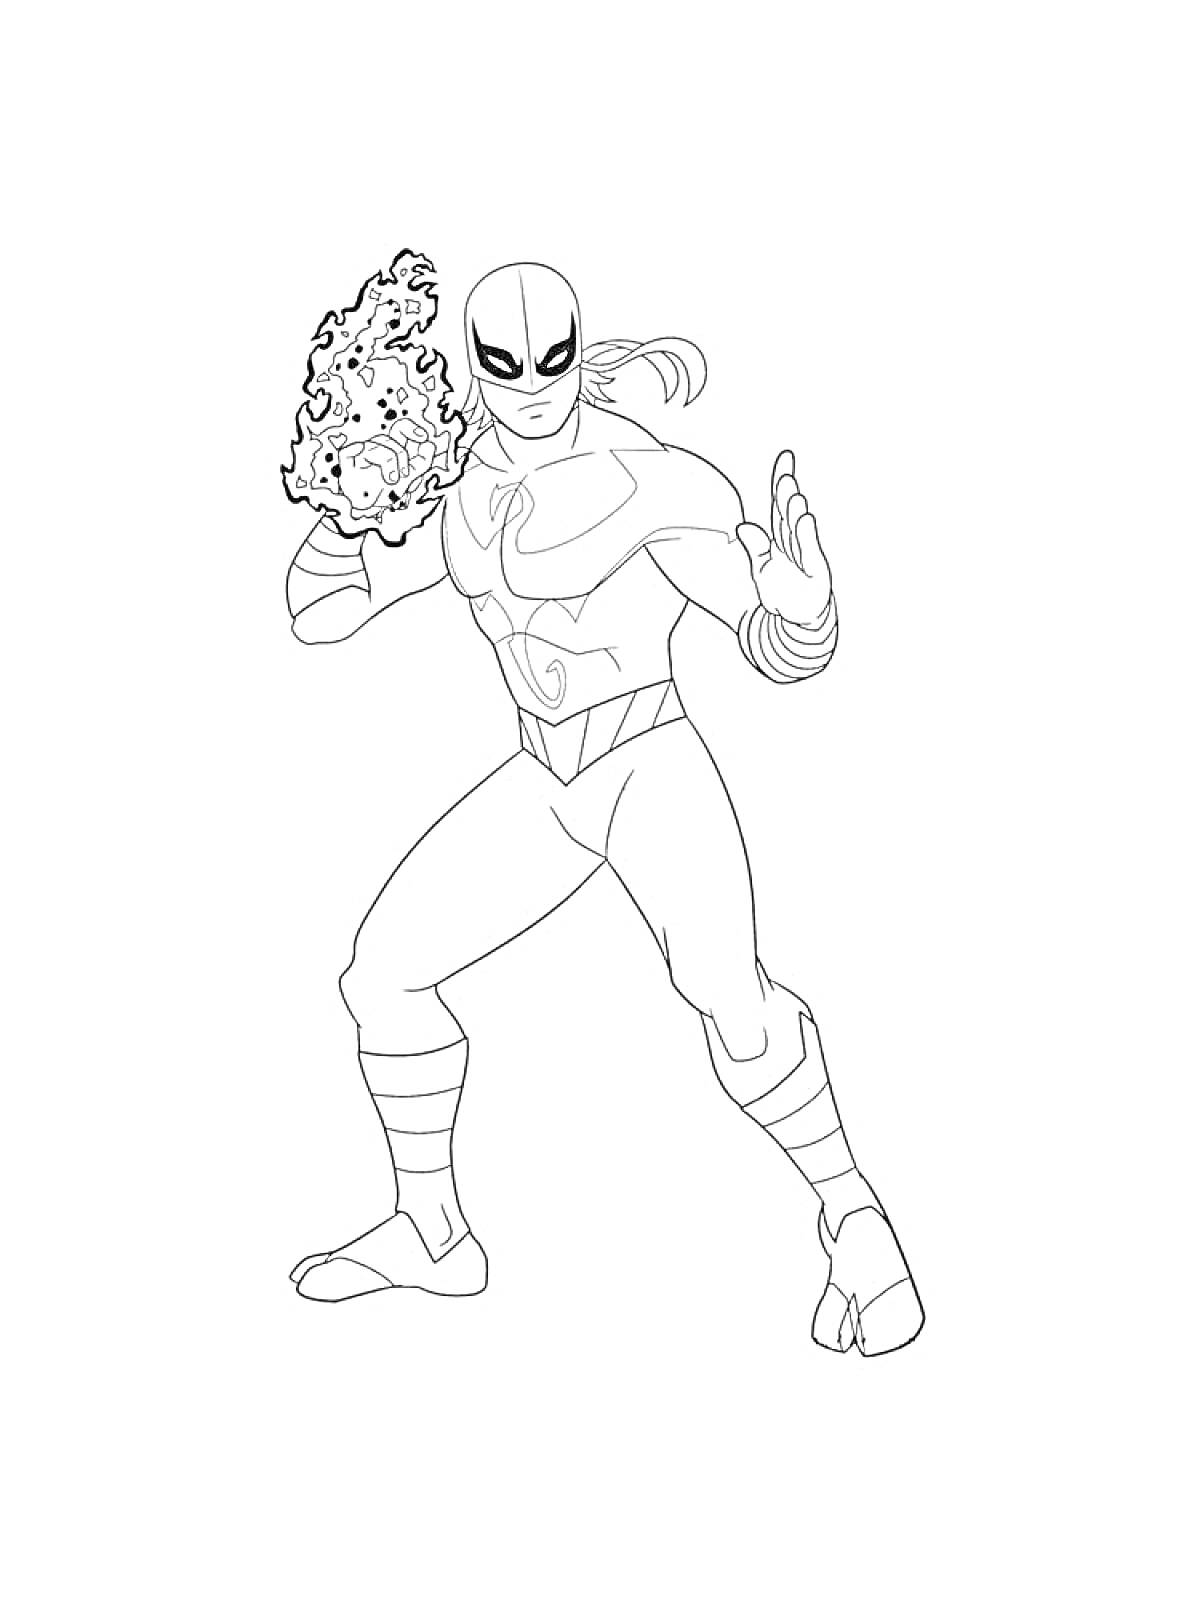 Раскраска Супергерой из Марвел с маской и огненными кулаками